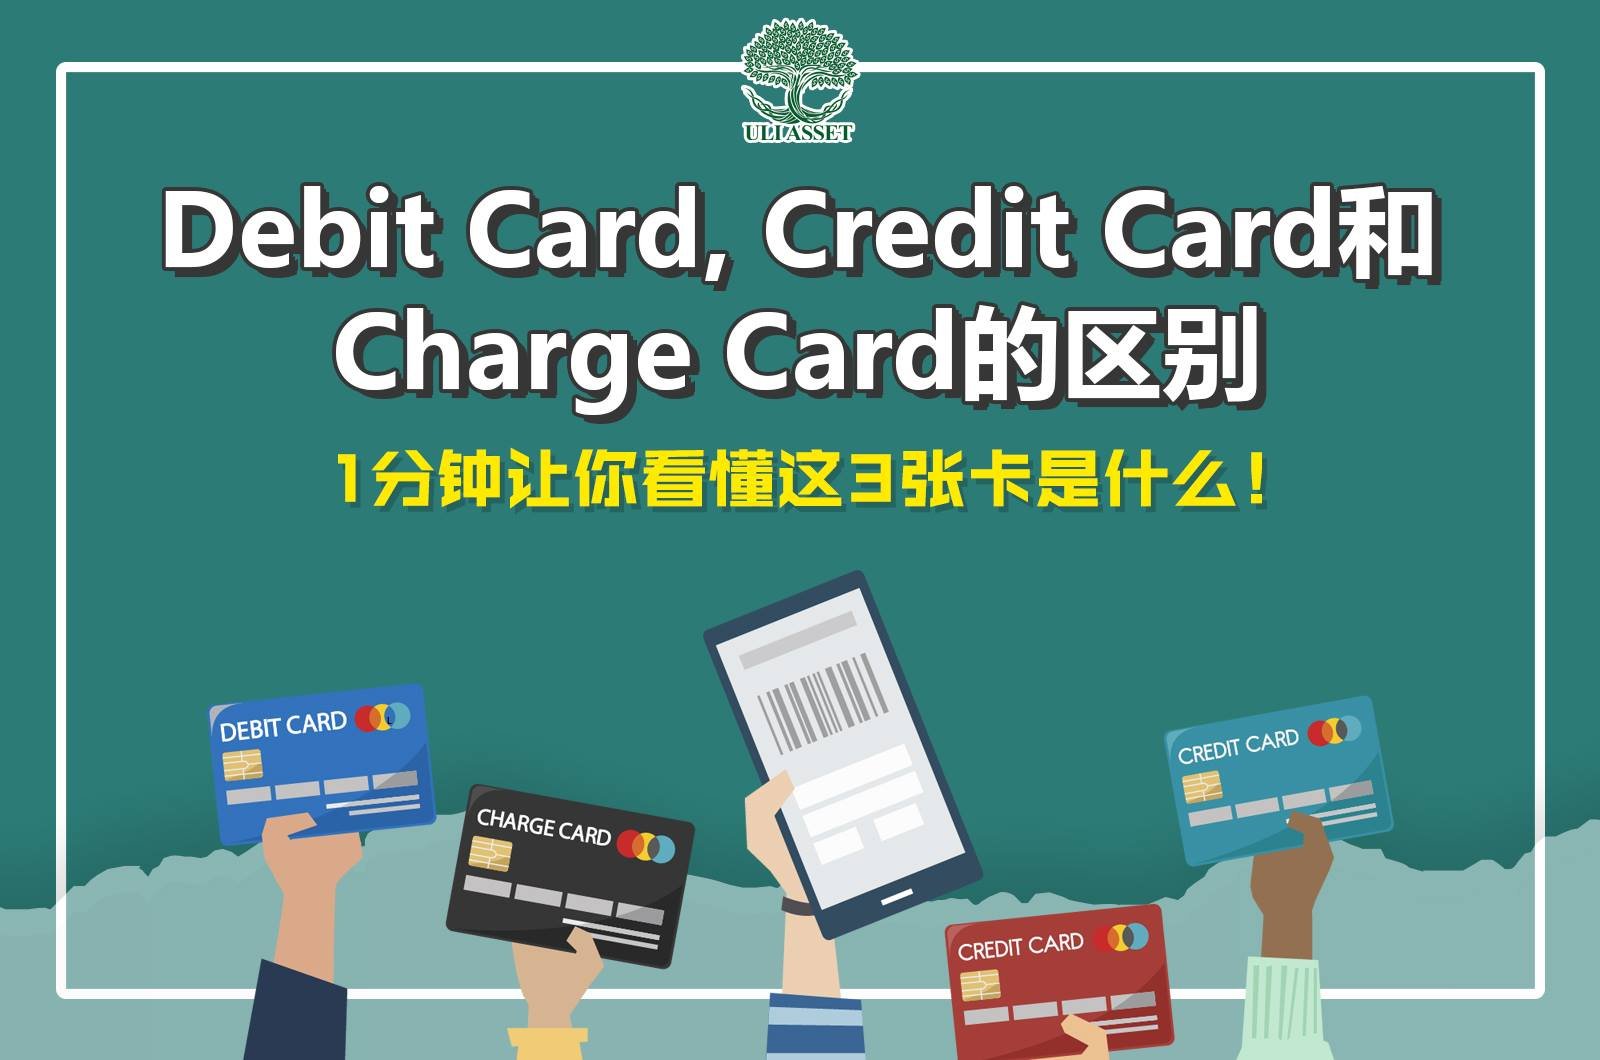 Debit card 是 什么